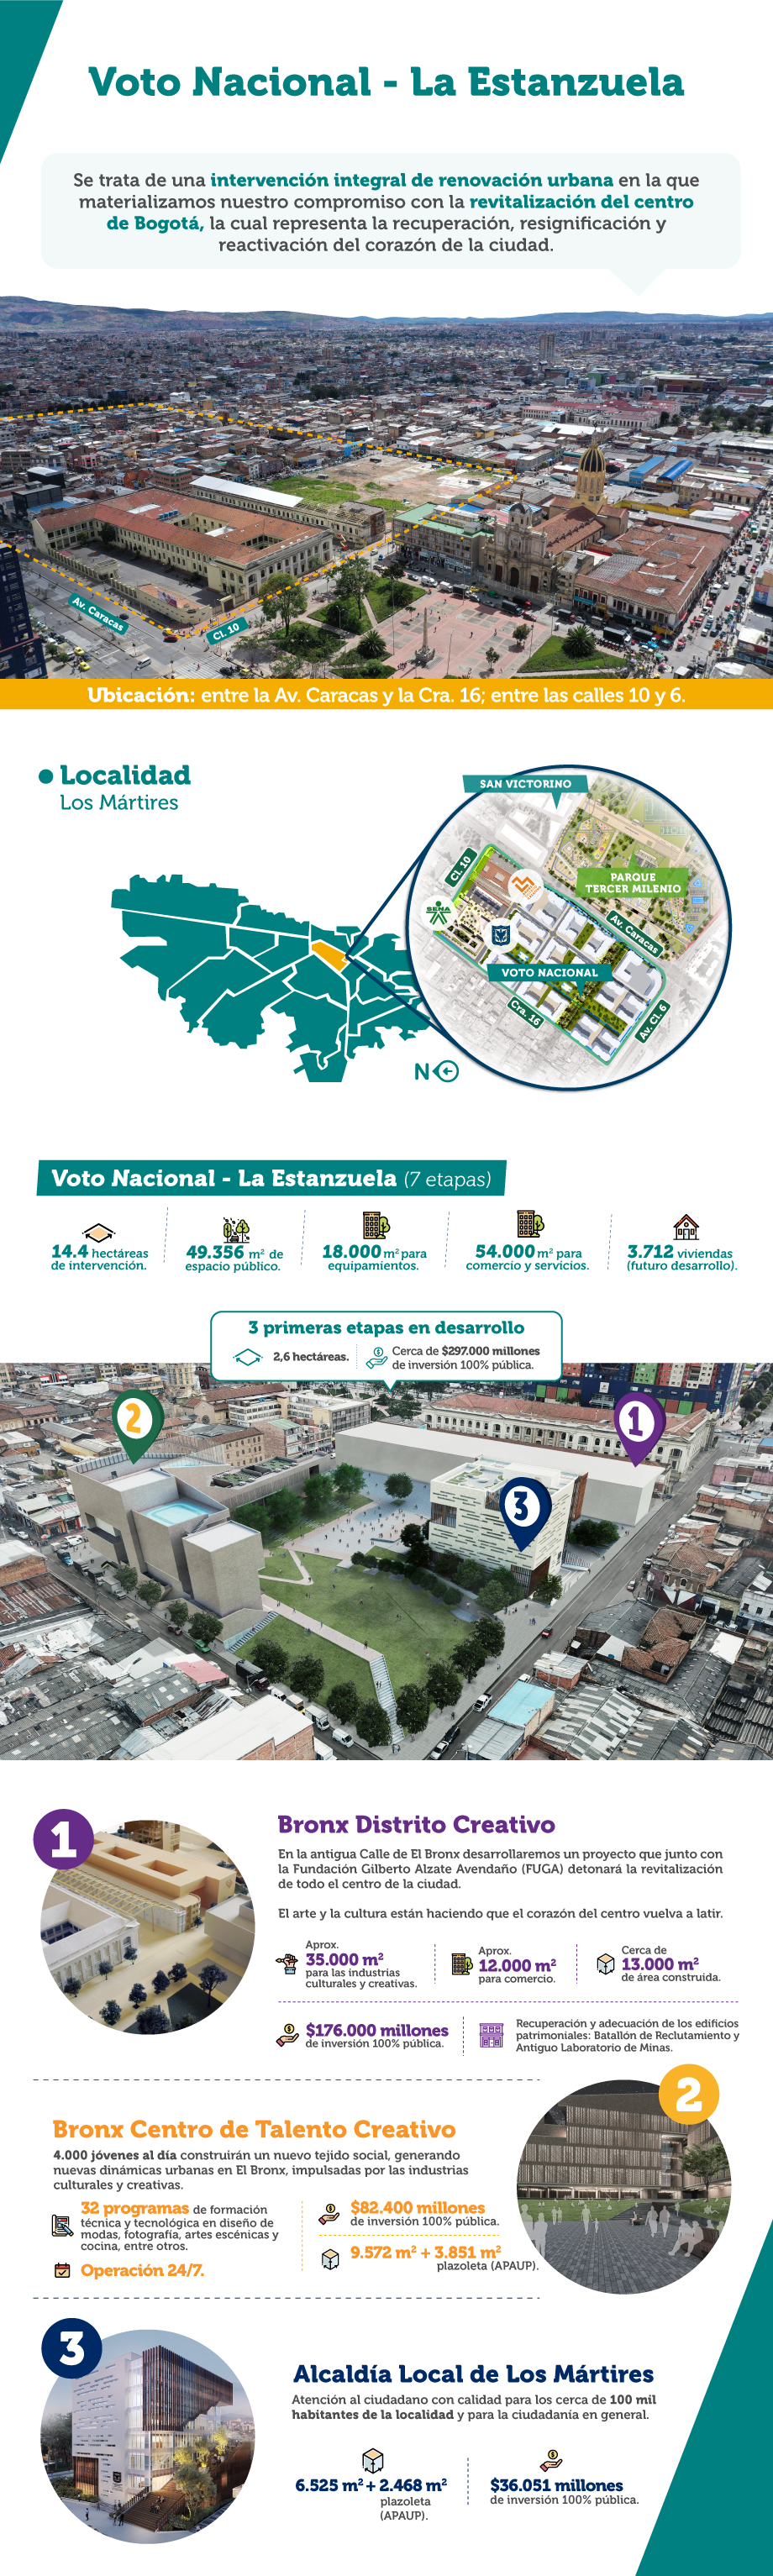 Infografía Proyecto Voto Nacional - La Estanzuela